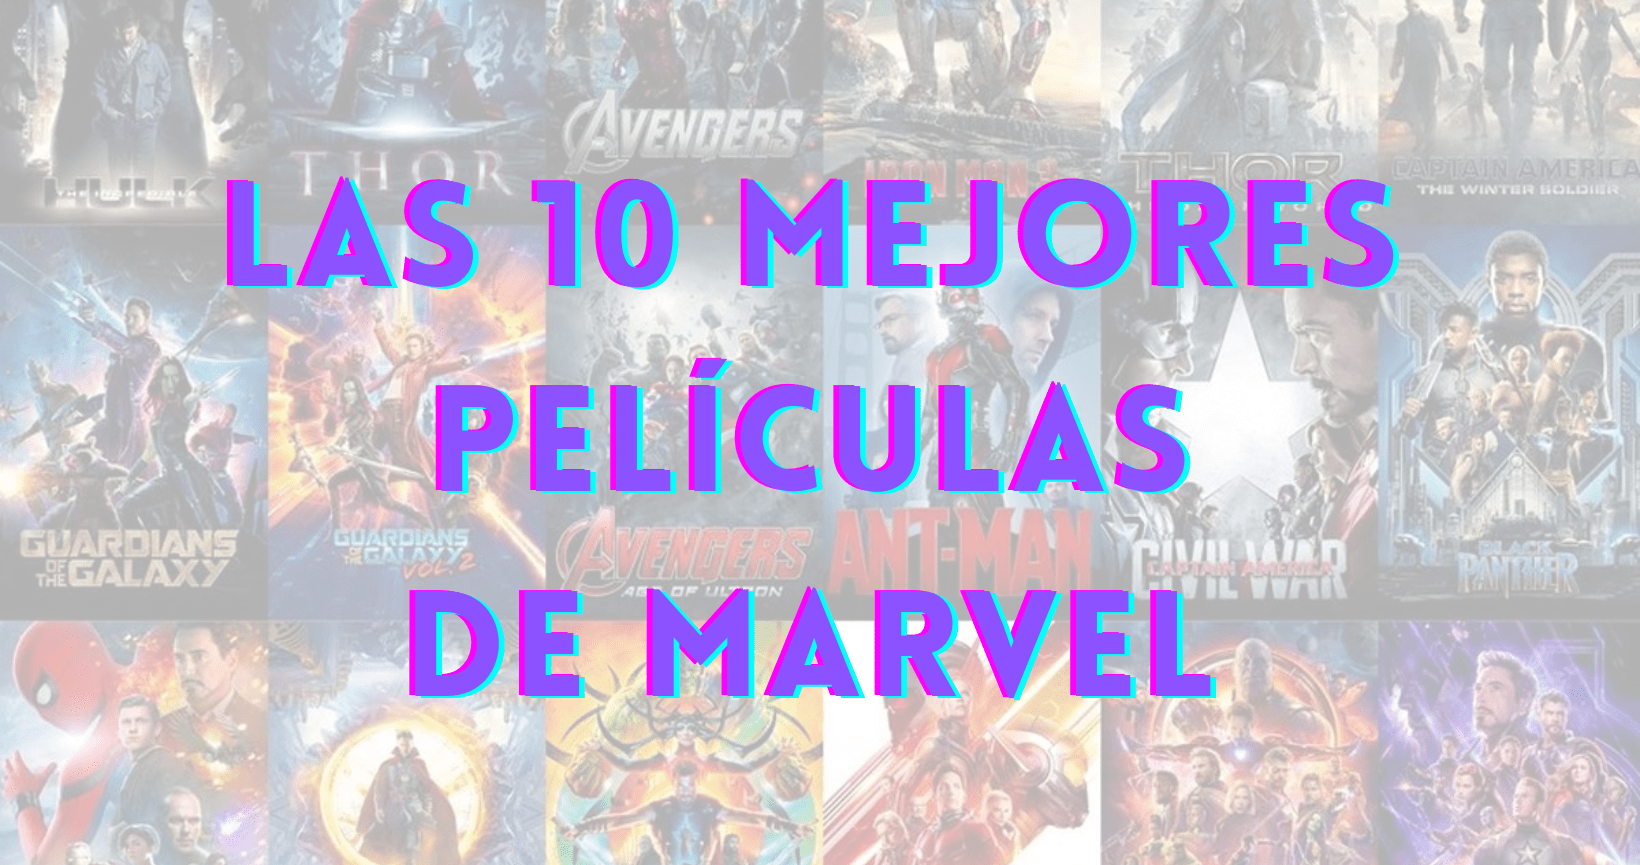 Las 10 mejores películas de Marvel según Film Affinity